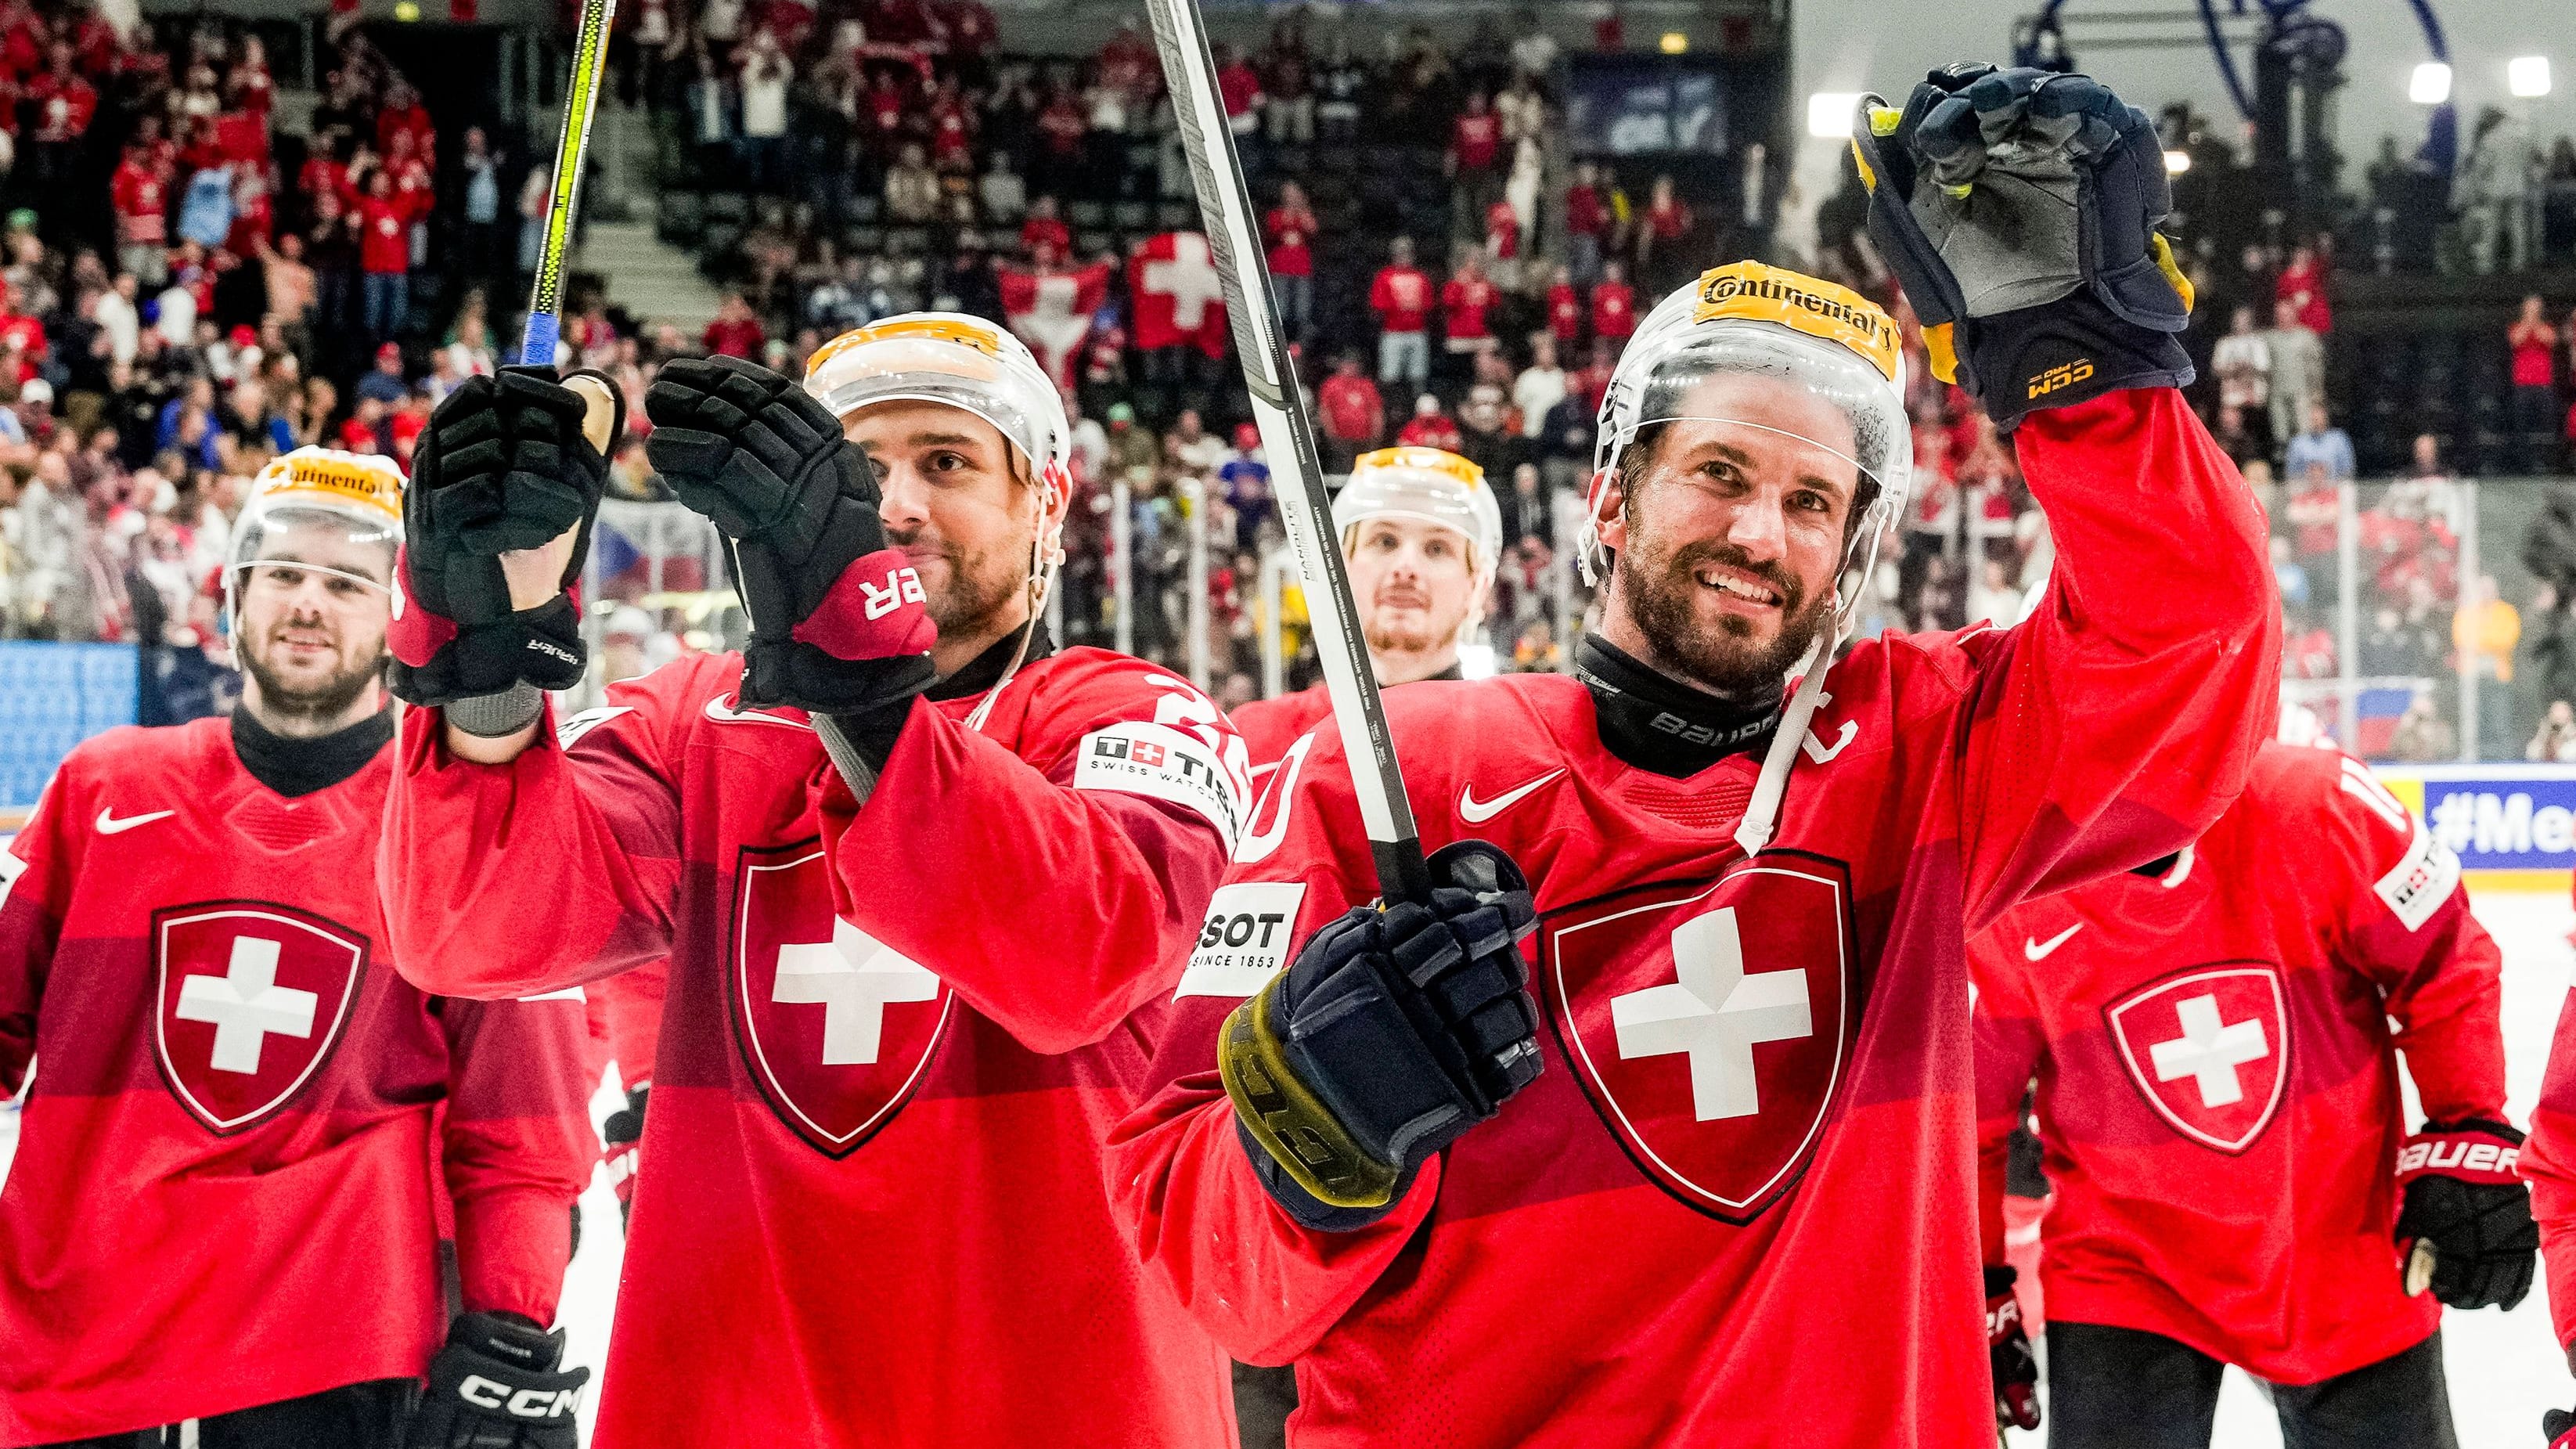 Eishockey-WM: Entscheidung im Penaltyschießen – Schweiz steht im Finale